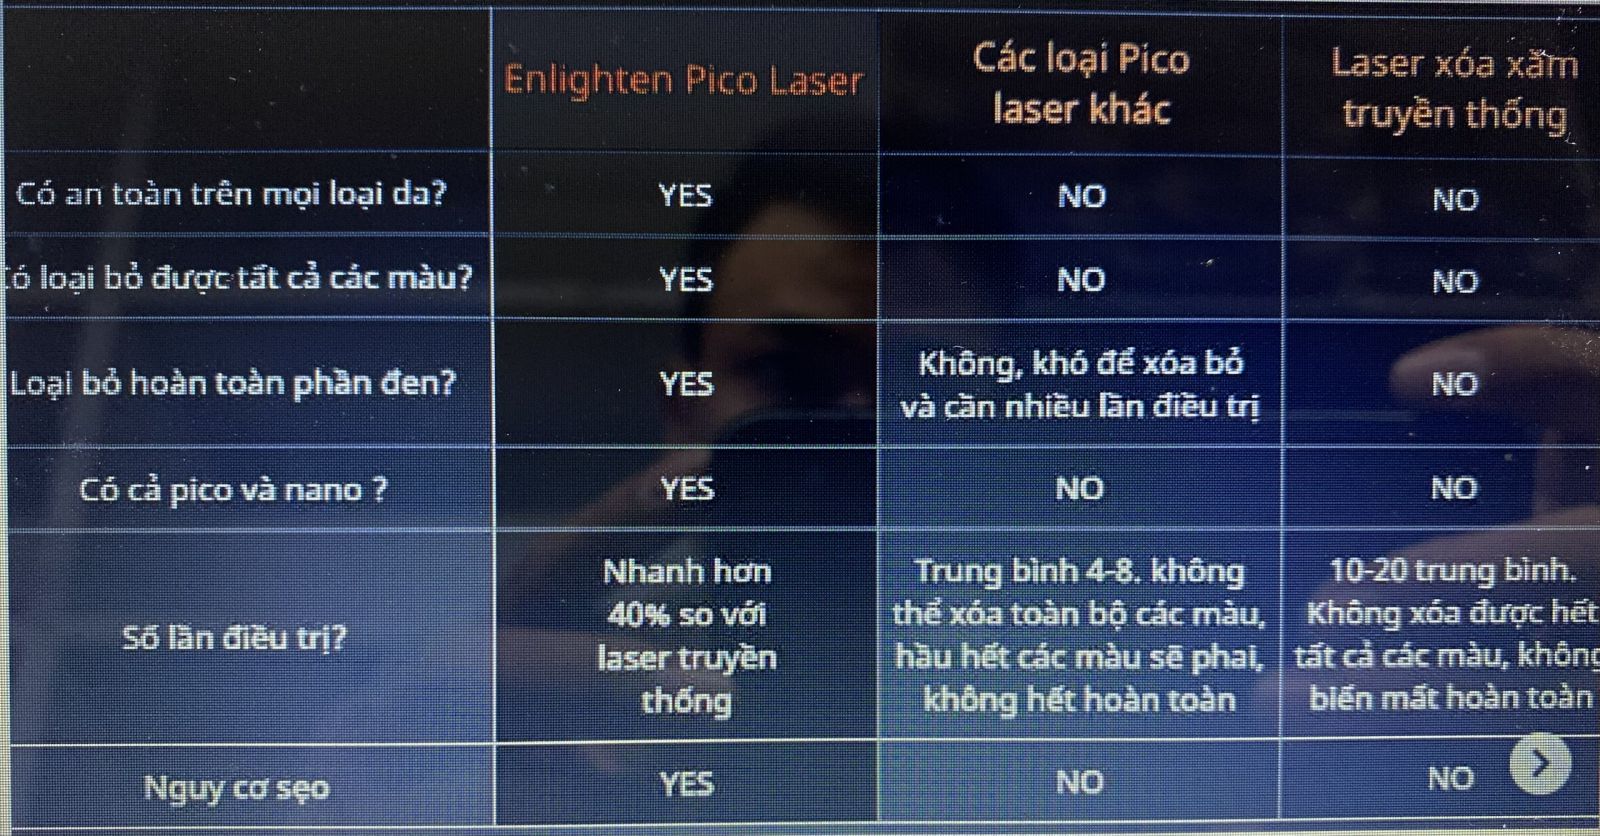 Bảng so sánh chức năng và tác động giữa Pico Enlighten với các laser khác